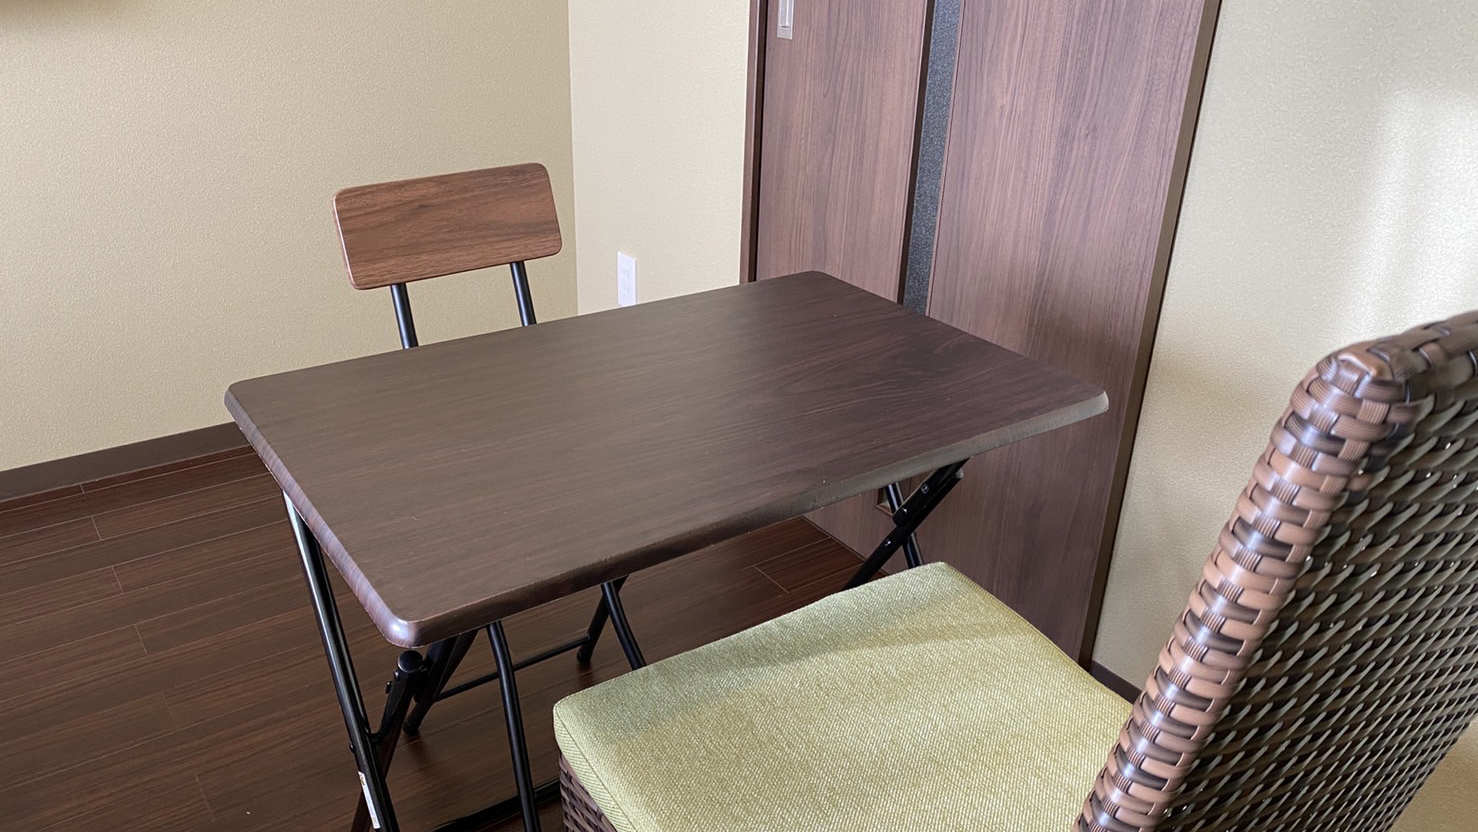 ツインルームに食事がしやすいテーブルとチェアを新規導入いたしました。